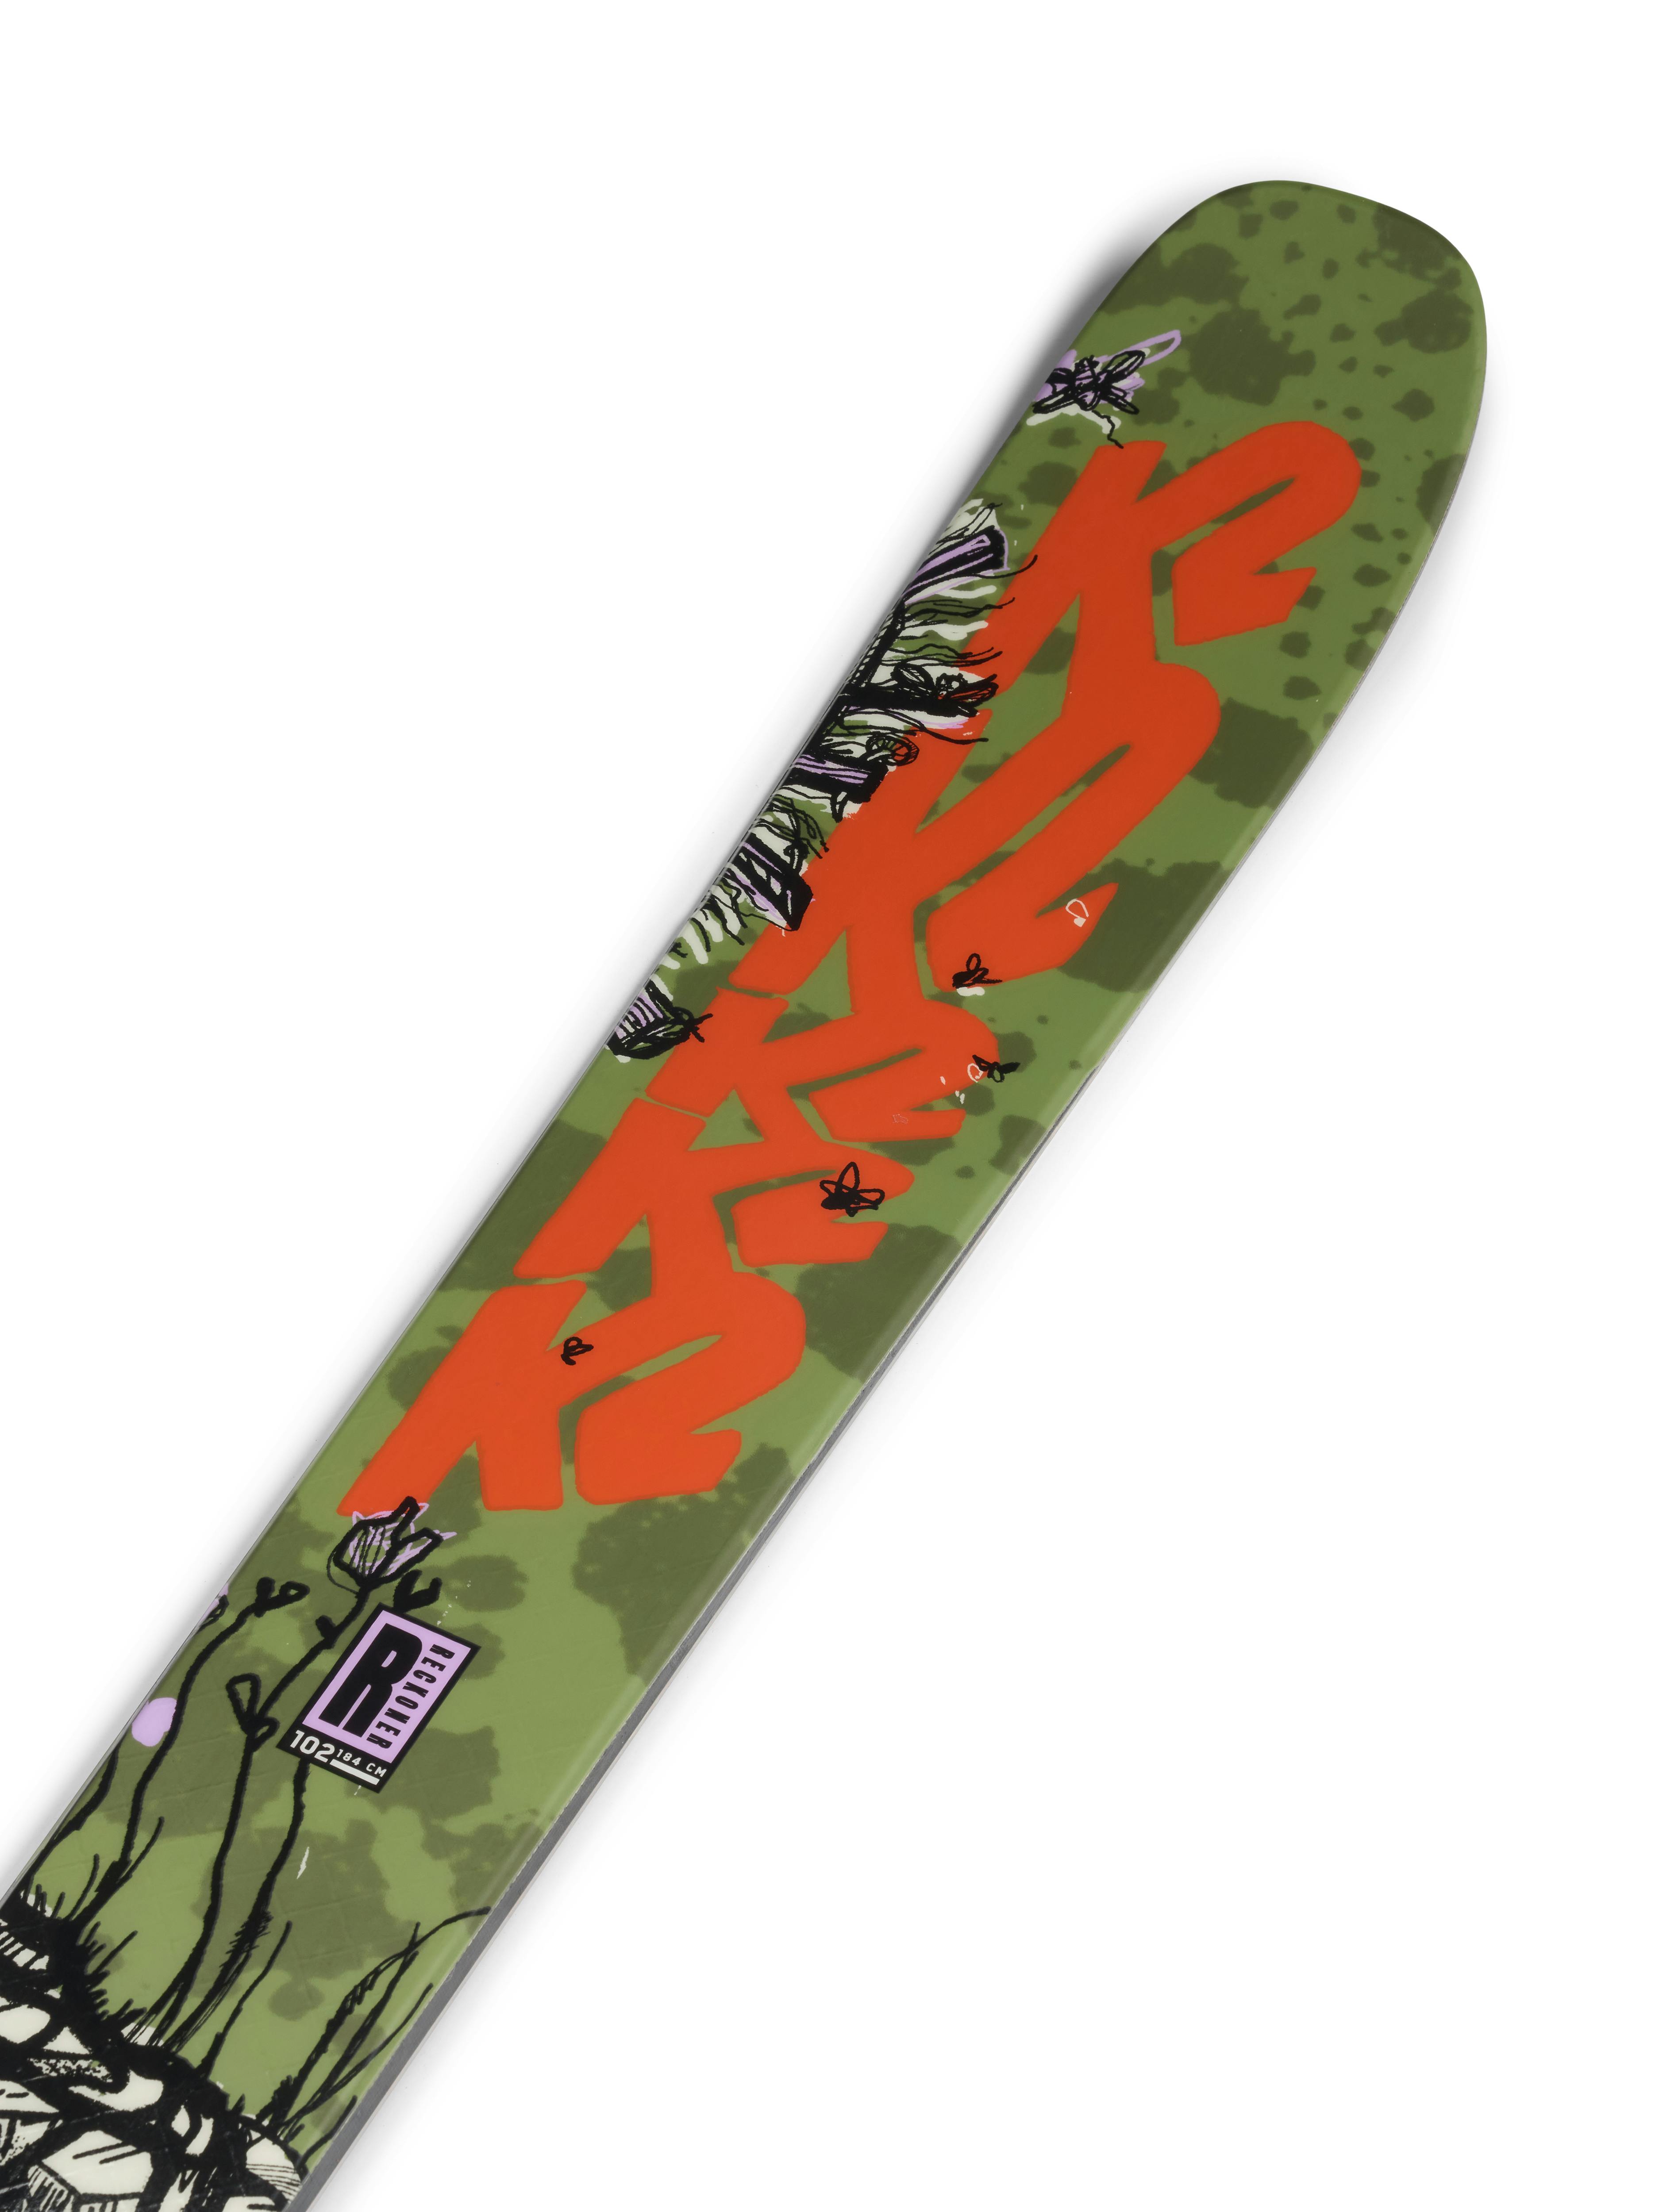 K2 Reckoner 102 Skis · 2023